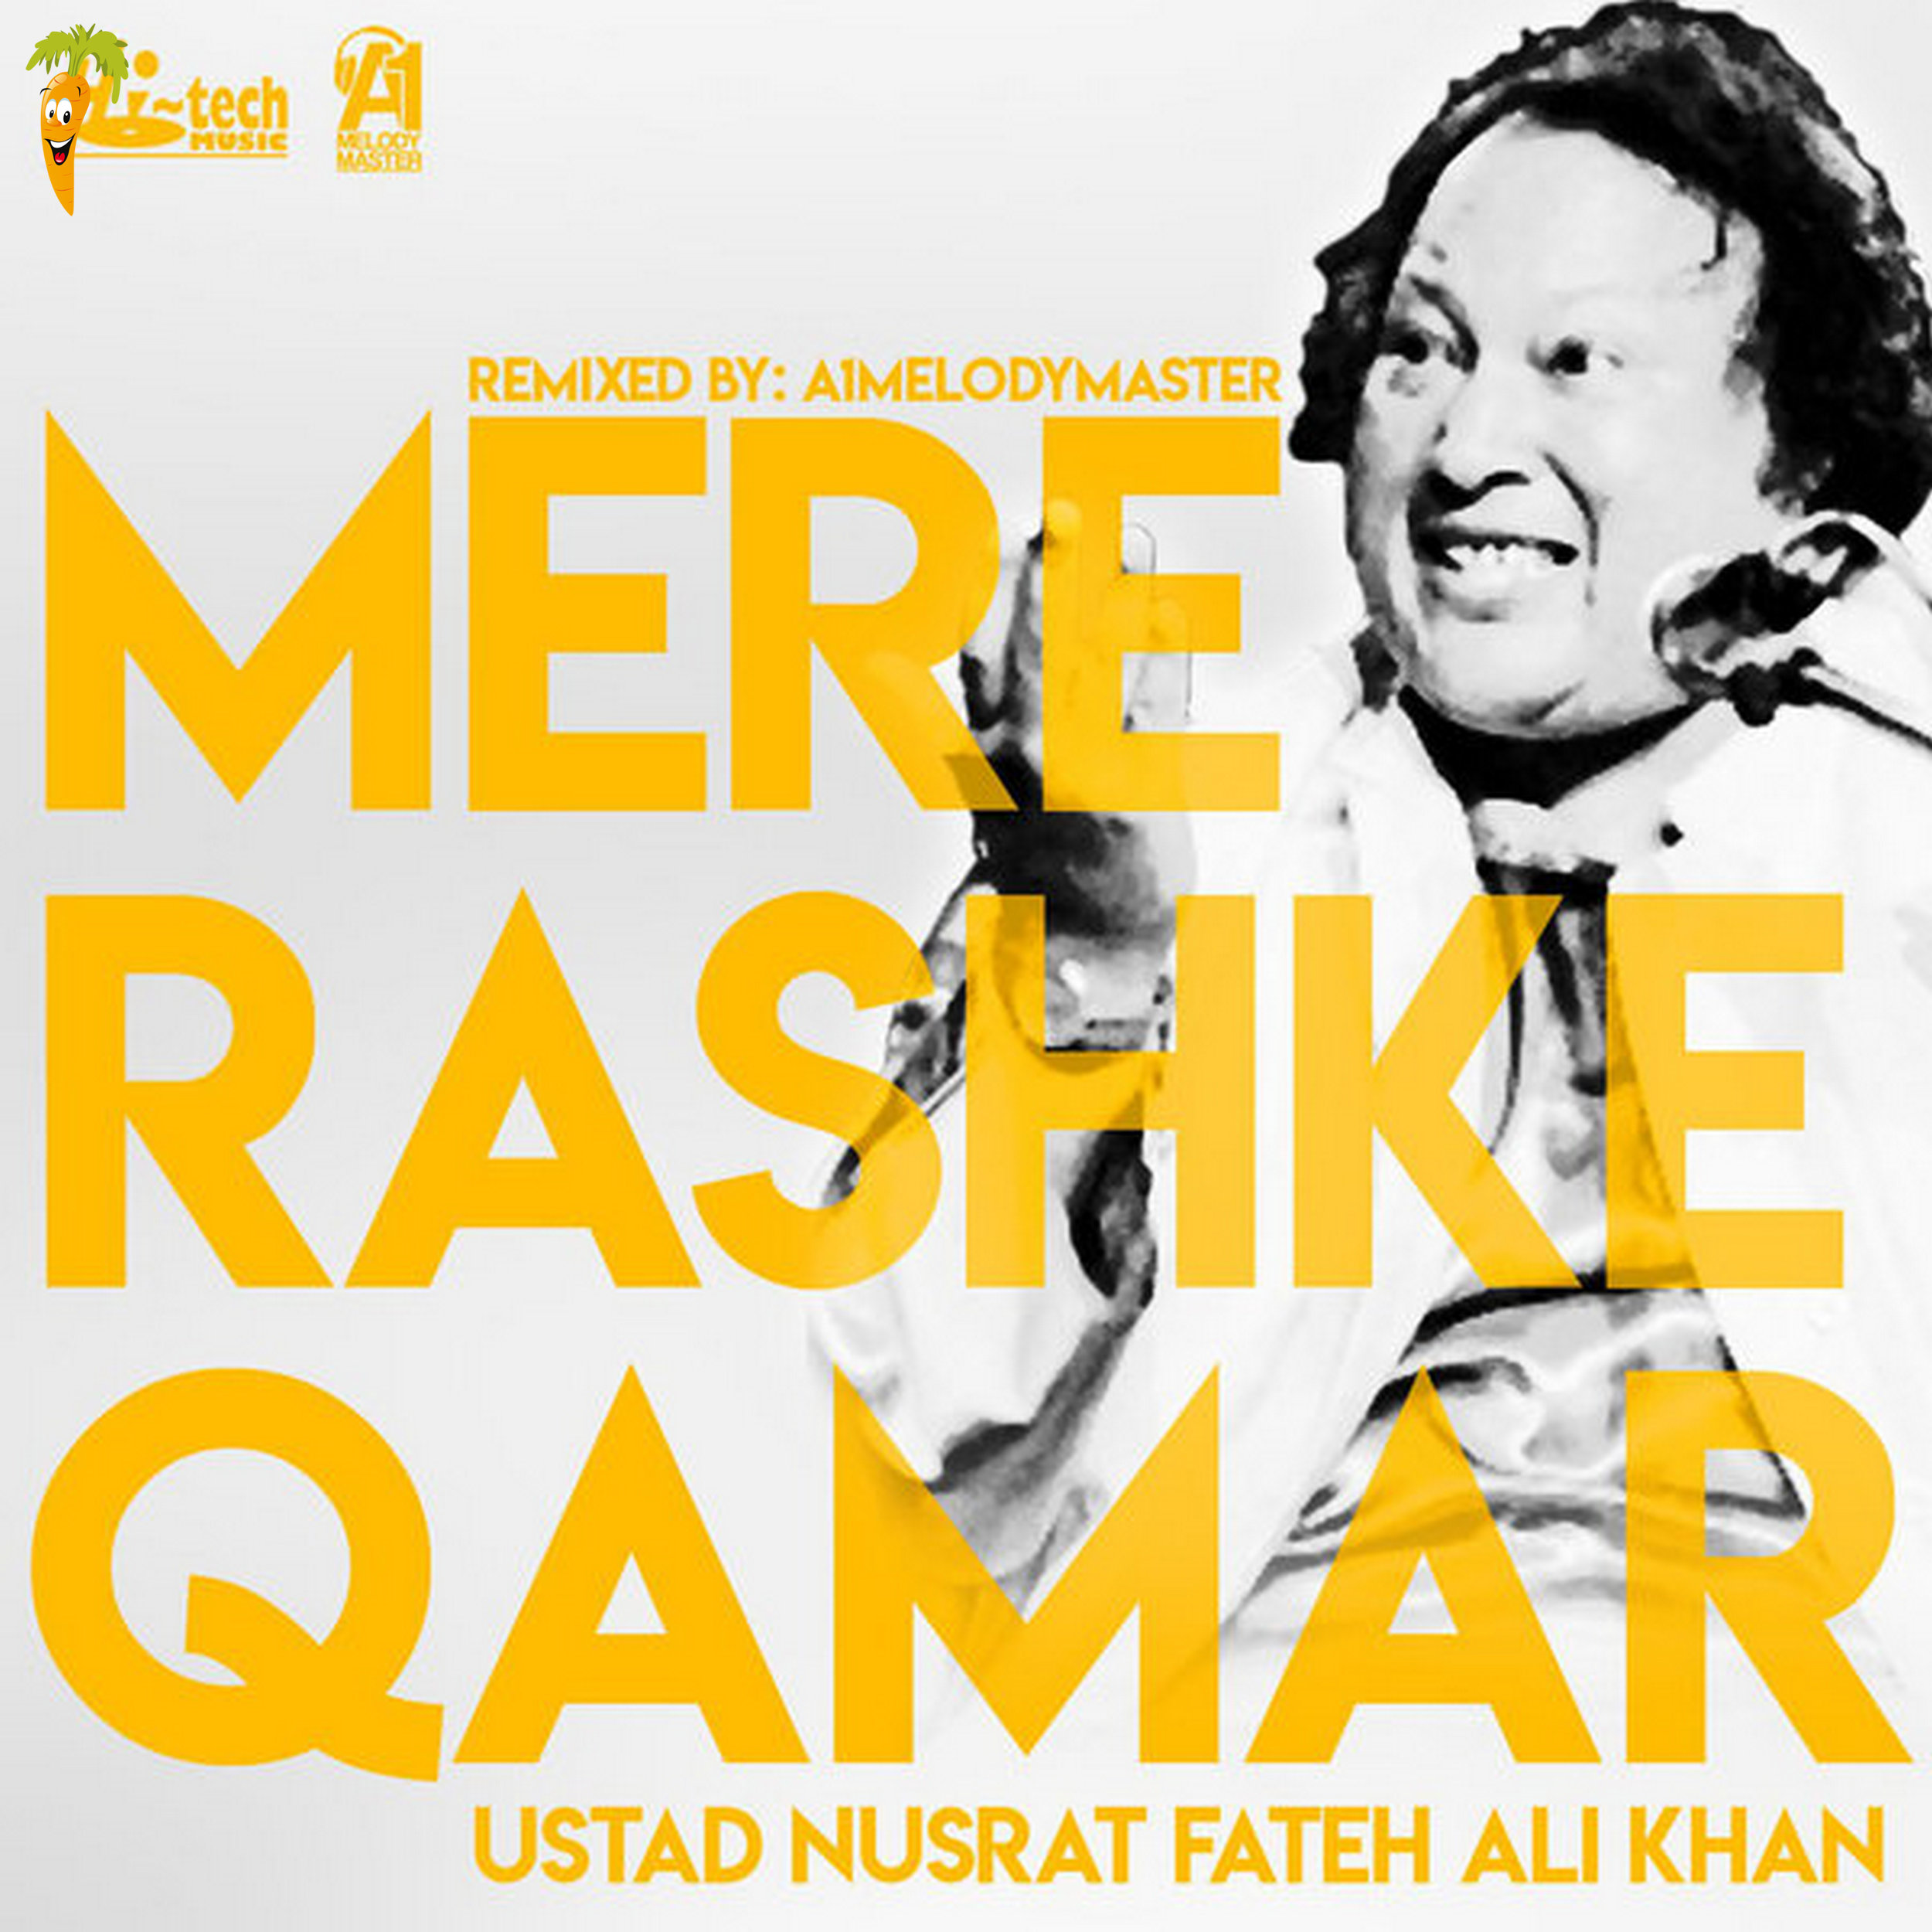 Mere Rashke Qamar (feat. A1 Melodymaster) - Single.jpg